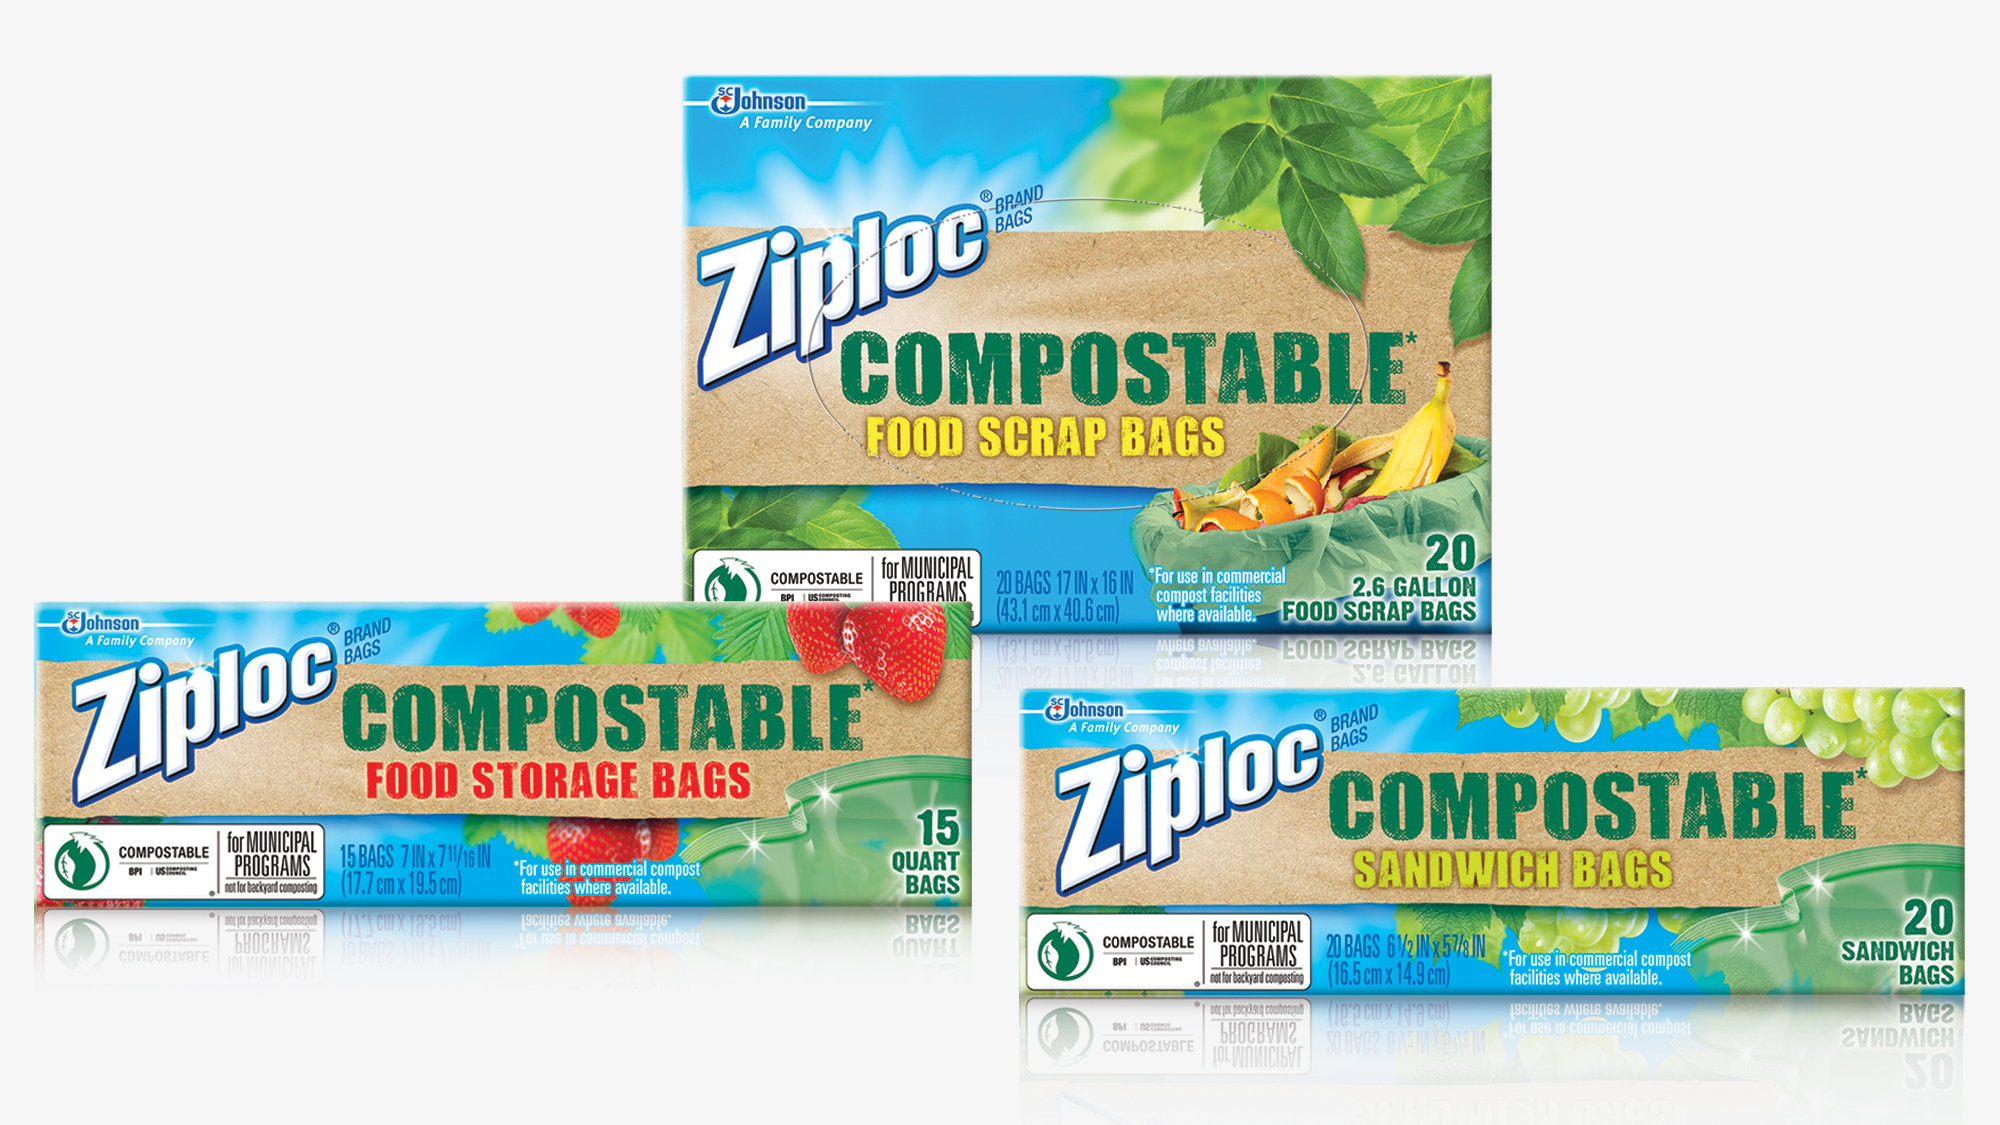 Çevreci araştırmalar ve trendler Ziploc kompostlaştırılabilir poşet gibi ürünlere talep olduğunu gösterdi